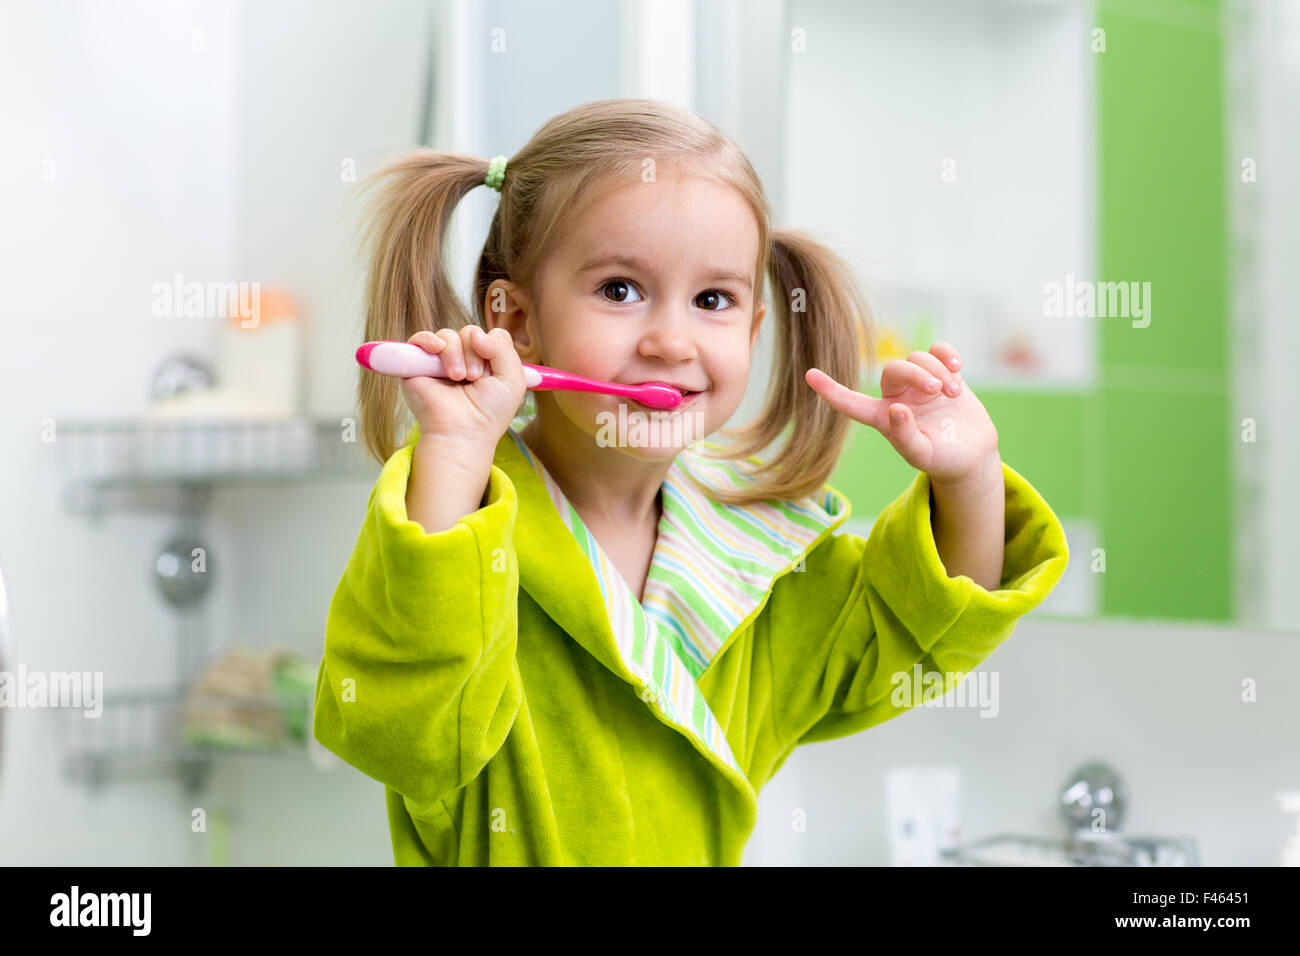 kid girl brushing teeth in bathroom Stock Photo